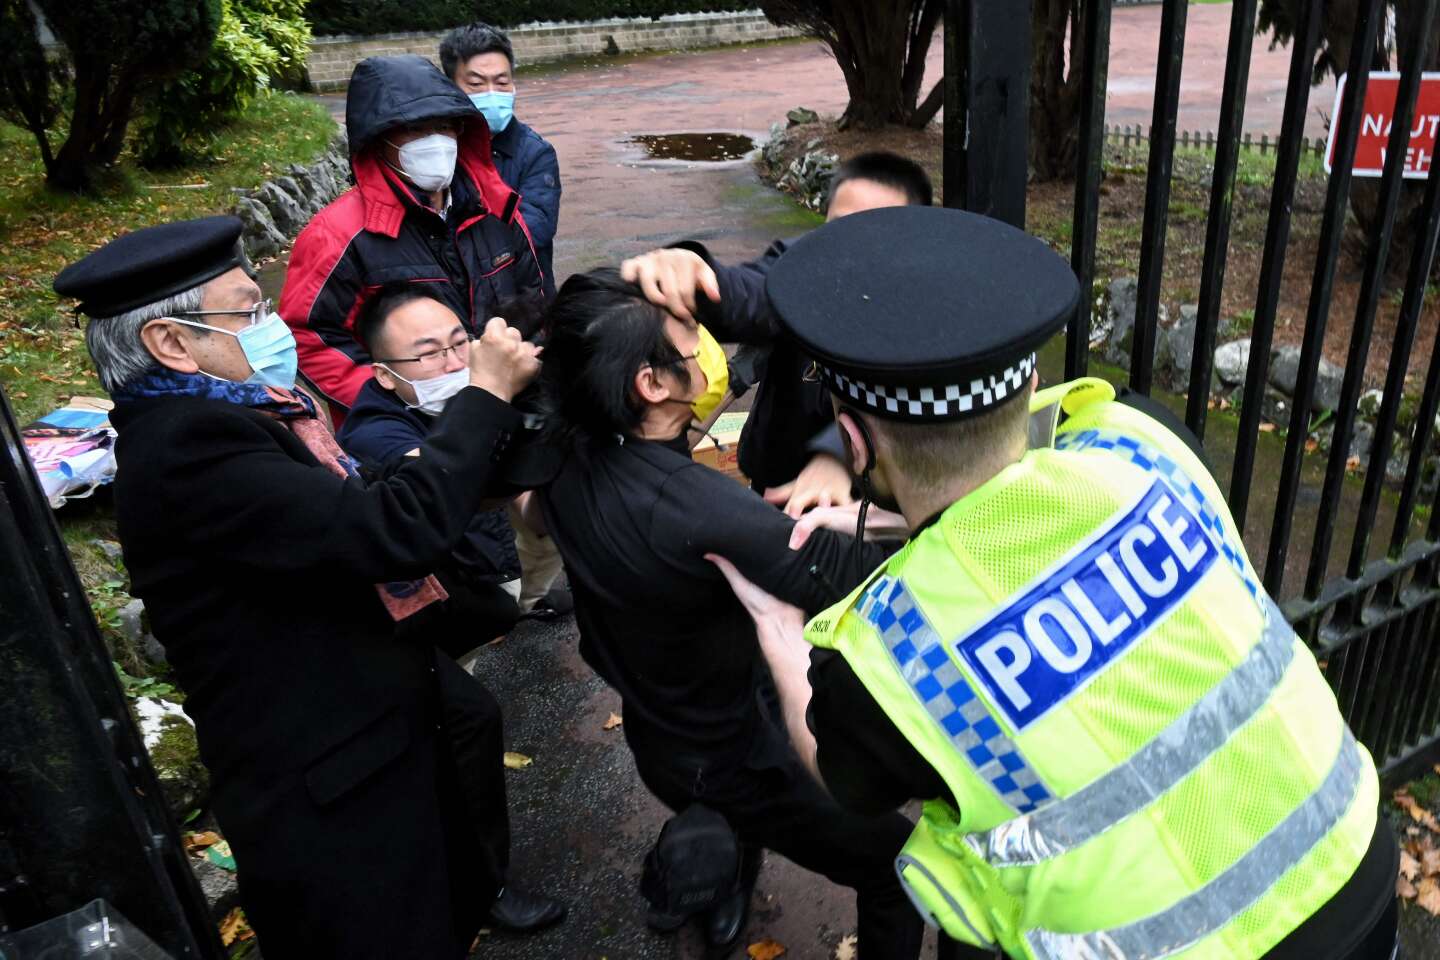 Großbritannien hat China aufgefordert, eine Erklärung nach dem Angriff auf einen demokratiefreundlichen Demonstranten in Manchester abzugeben